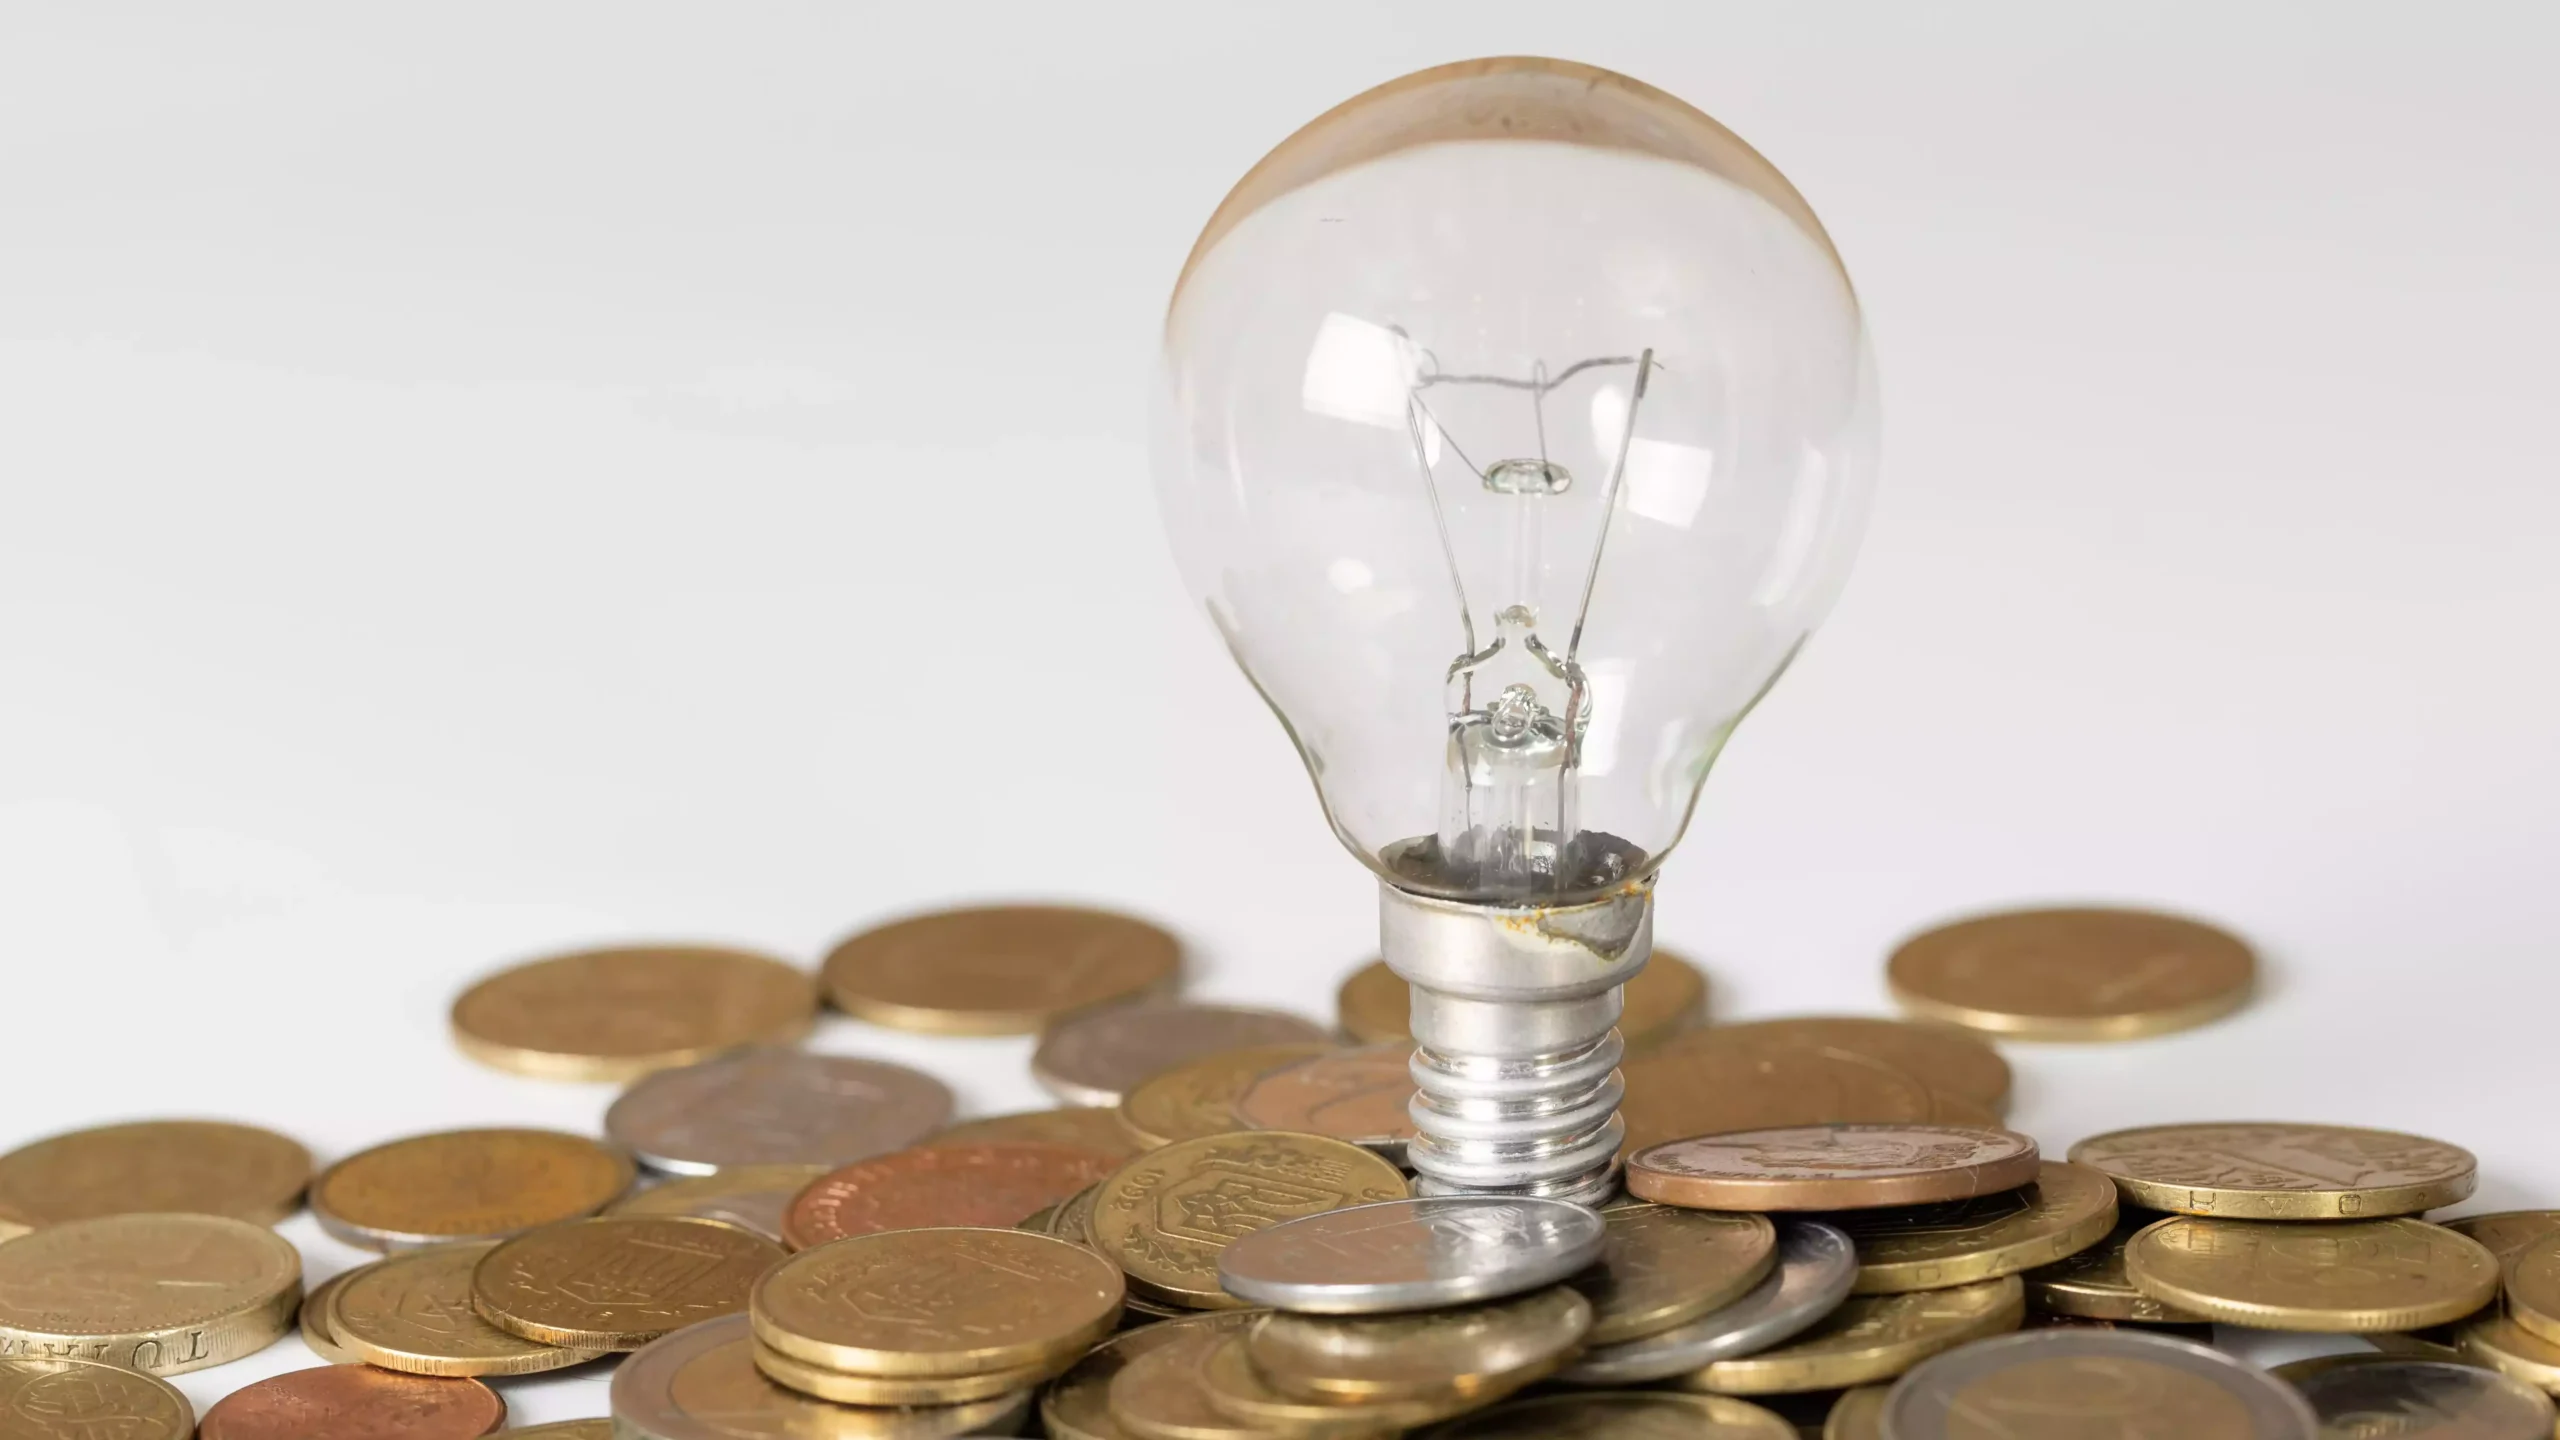 Baixos preços no mercado elétrico levam regulador a subir tarifas de acesso, mas impacto na fatura da luz é residual